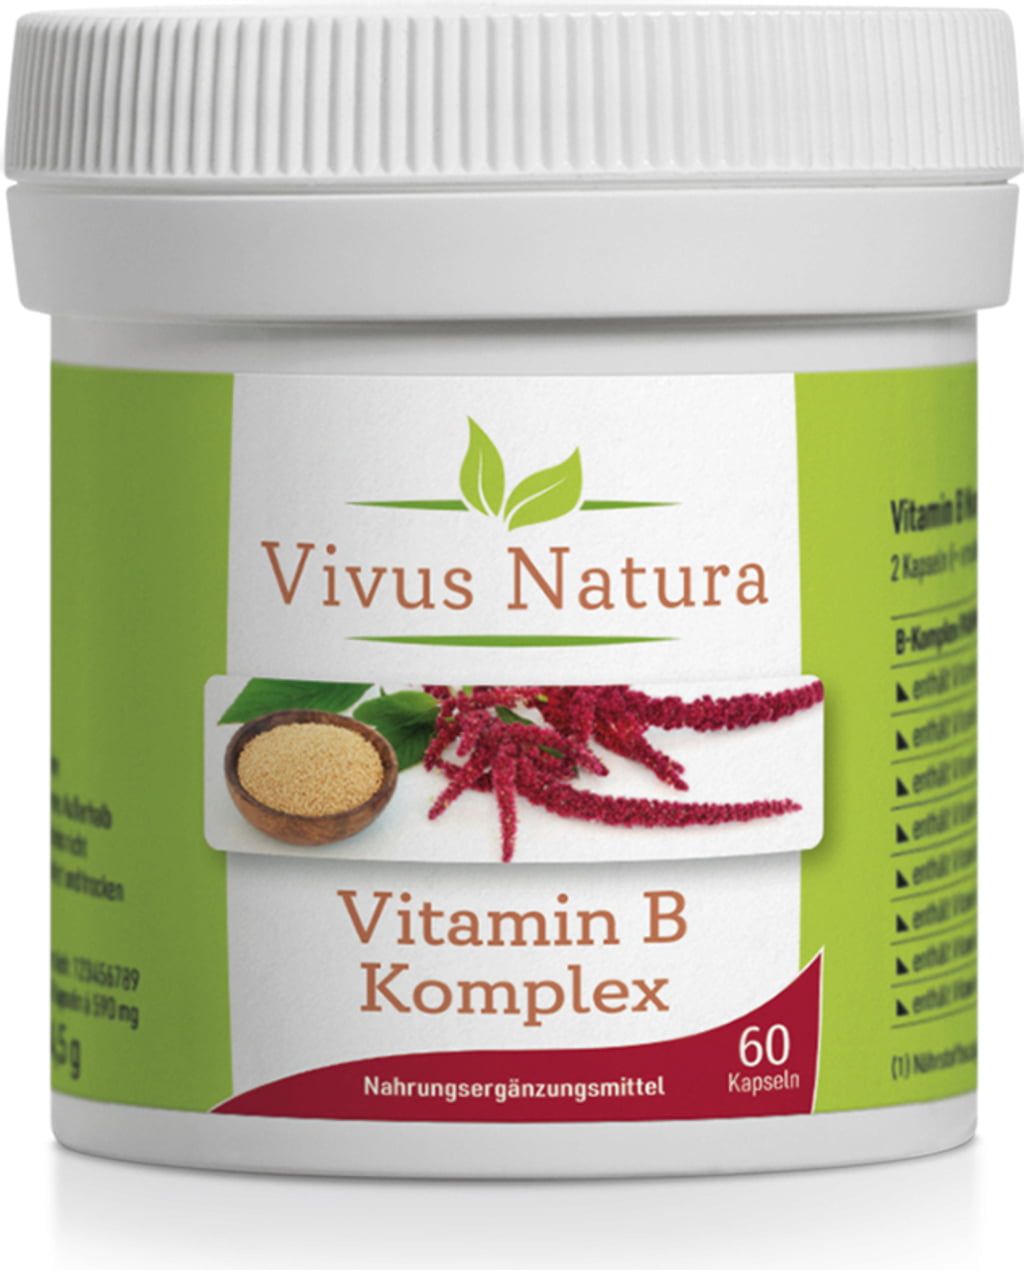 Vitamin B-Komplex, 60 Kapseln - Vivus Natura - VitalAbo